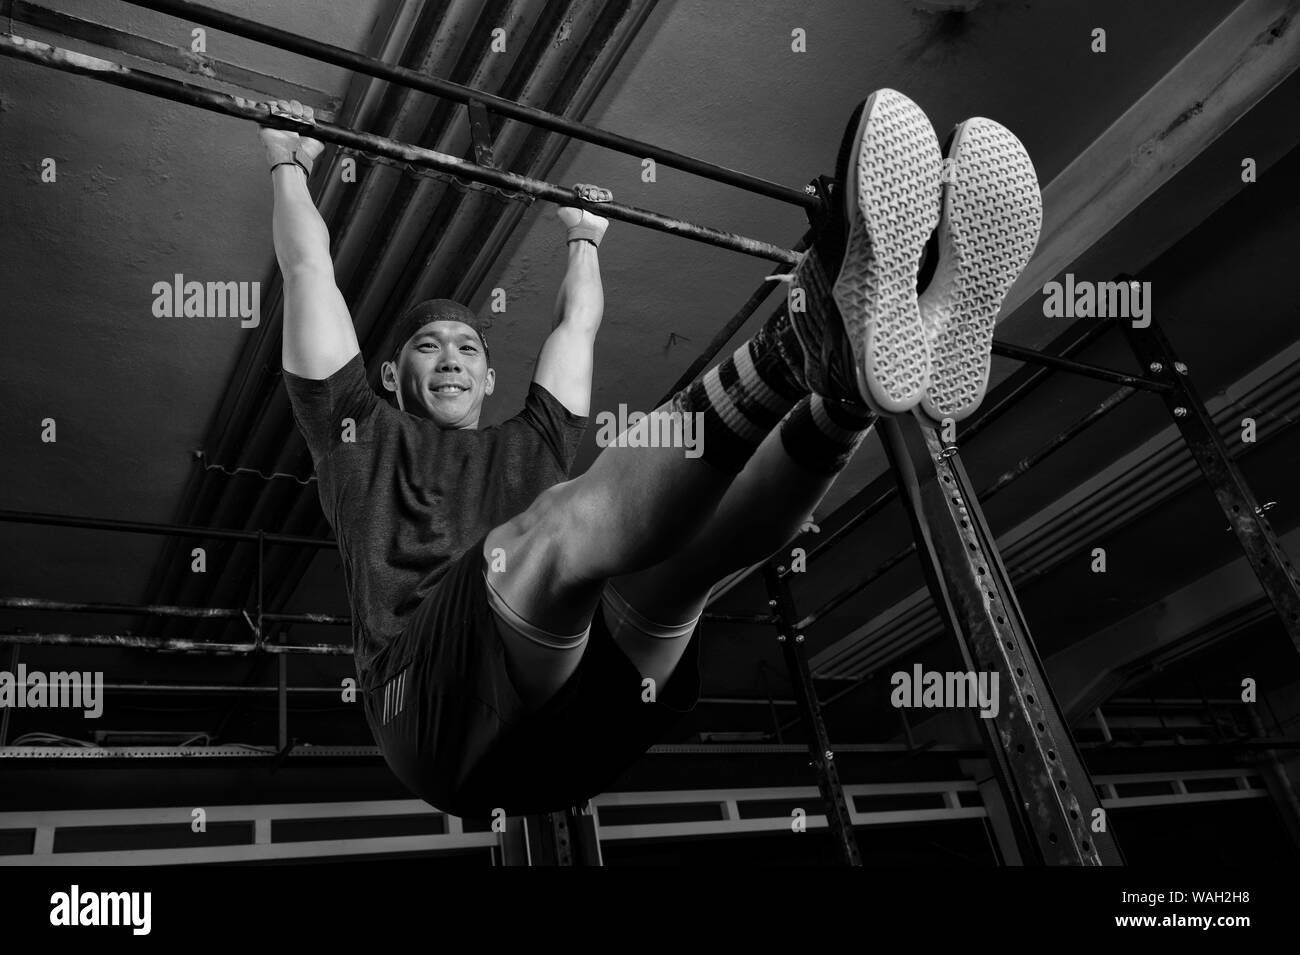 Un joven atractivo con músculos está sonriendo y haciendo el ejercicio l sentarse en la barra horizontal. Ejercicios de gimnasia funcional en un gimnasio. Foto de stock